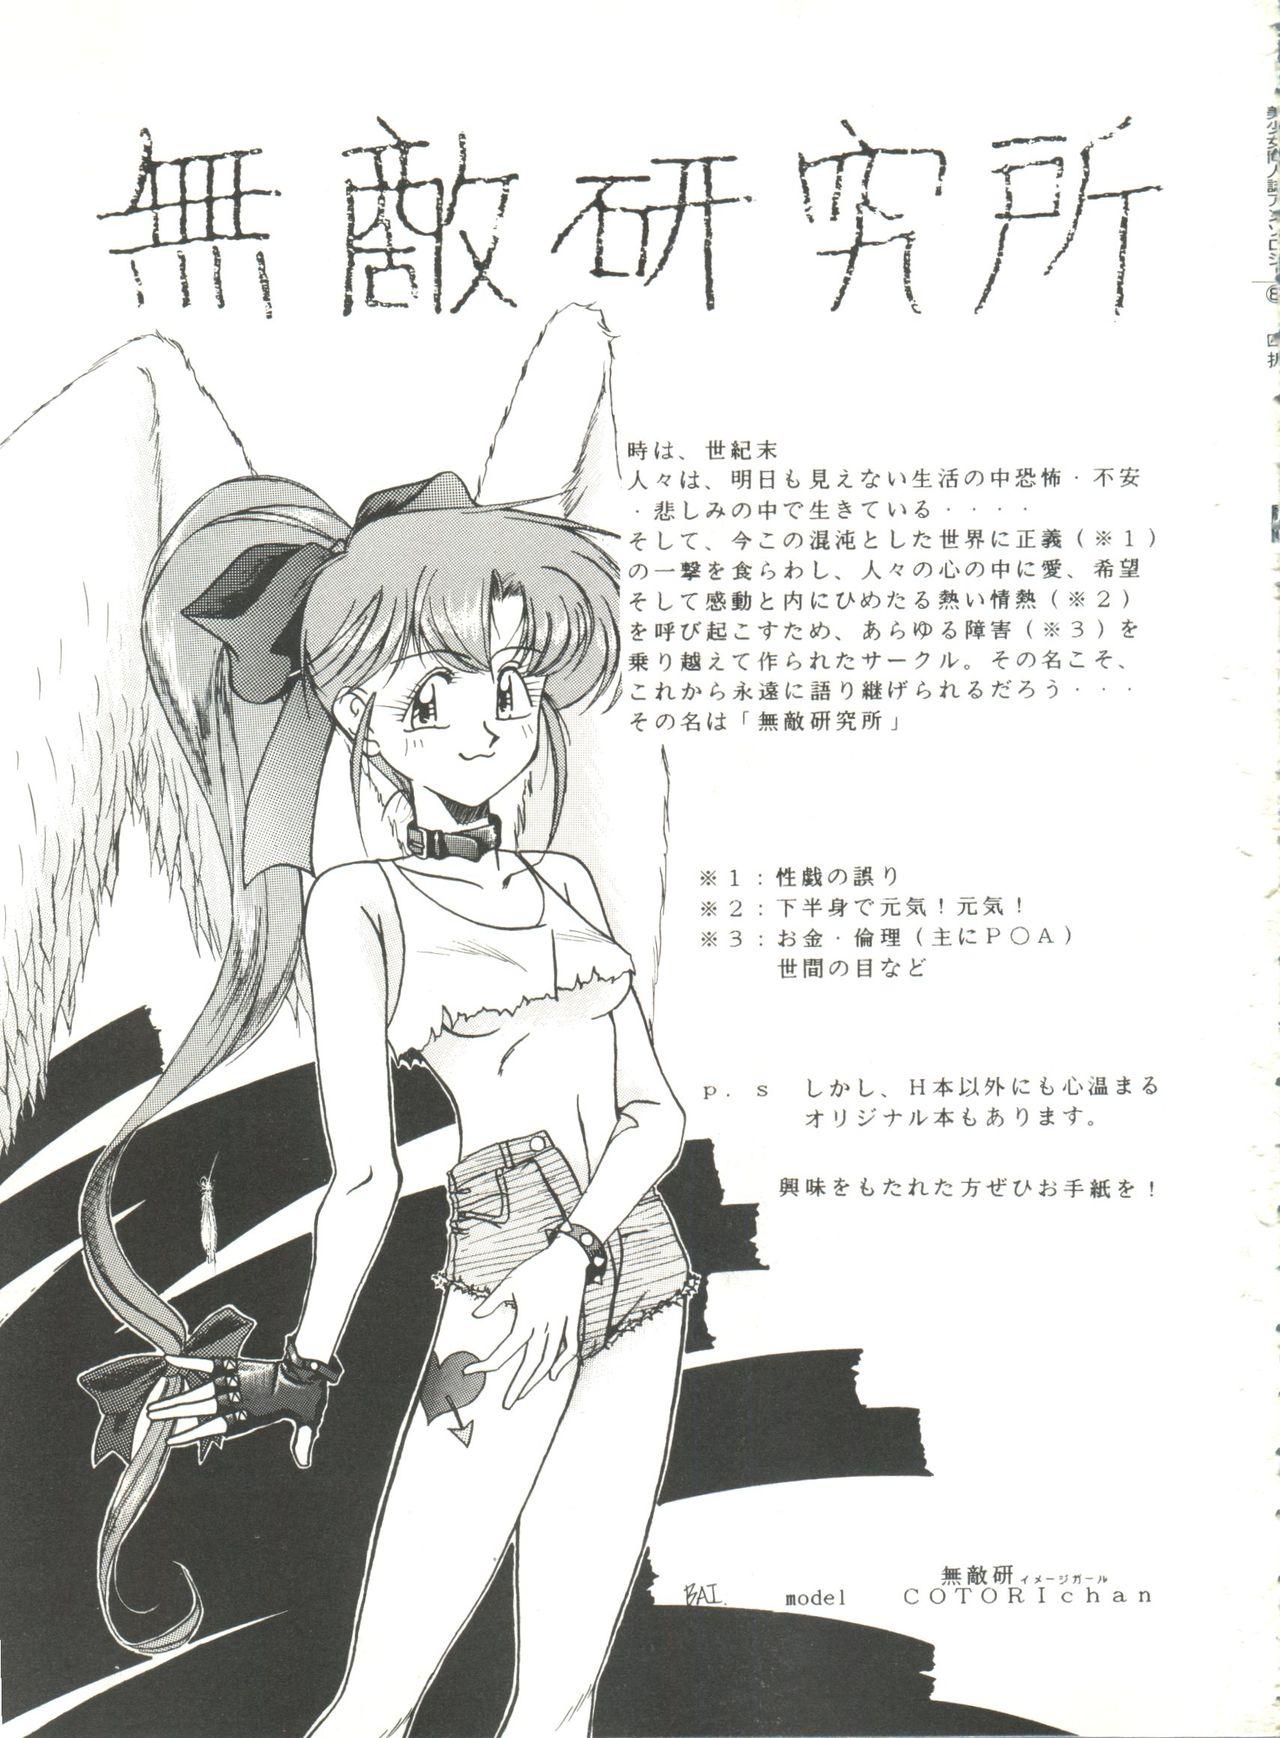 Bishoujo Doujinshi Anthology 8 - Moon Paradise 5 Tsuki no Rakuen 53